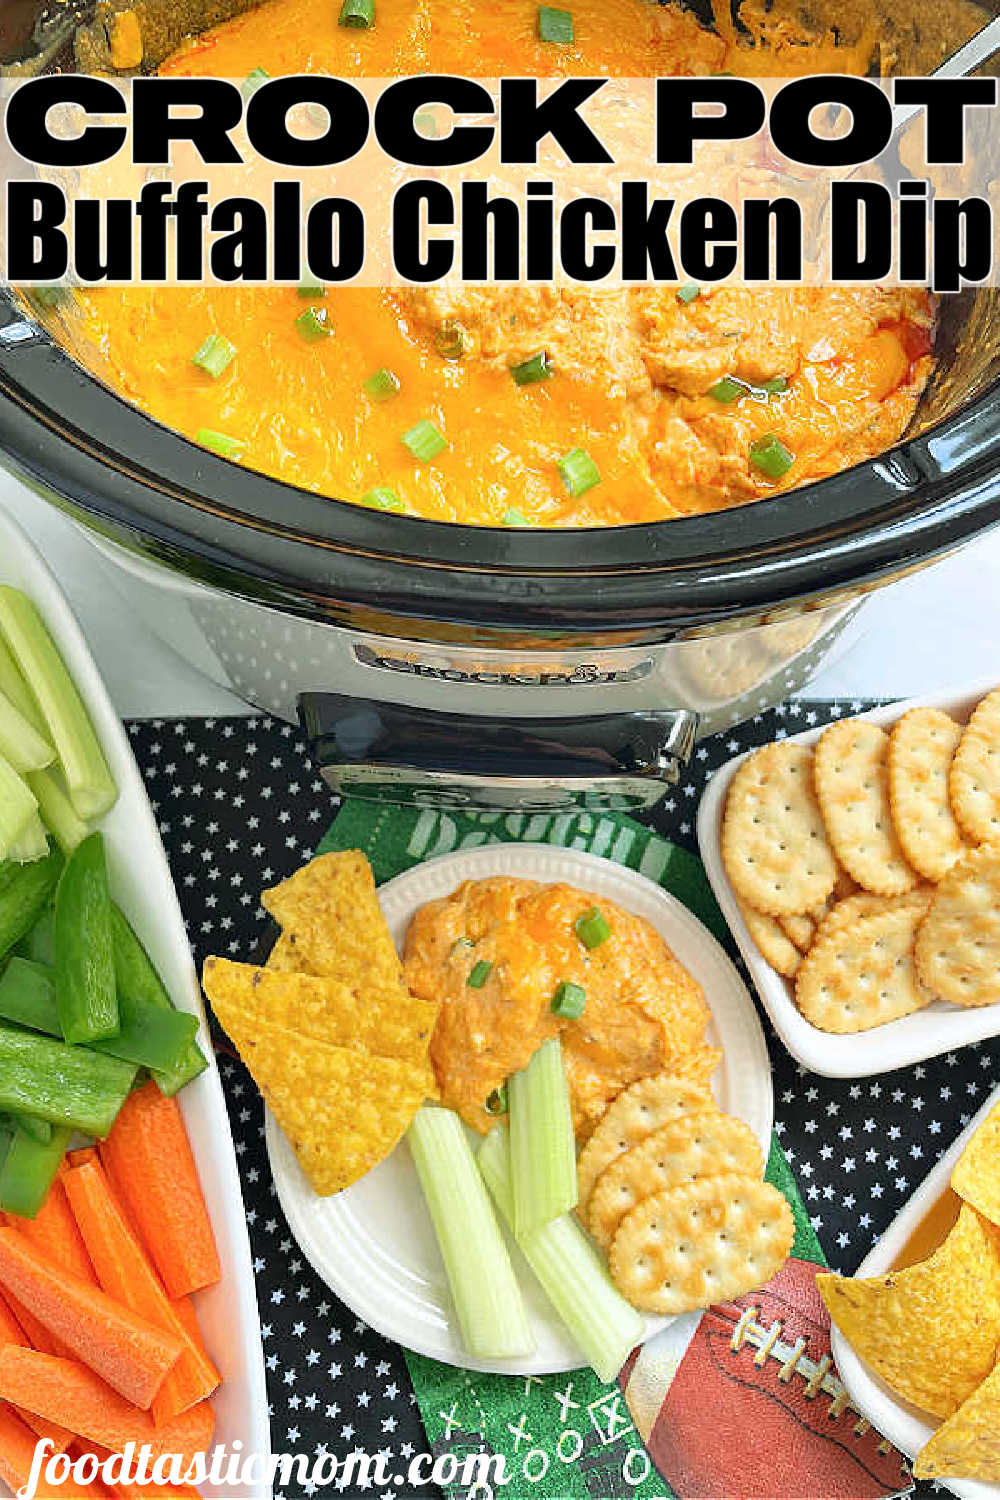 Crock Pot Buffalo Chicken Dip | Foodtastic Mom #crockpotrecipes #buffalochickendip #gameday via @foodtasticmom